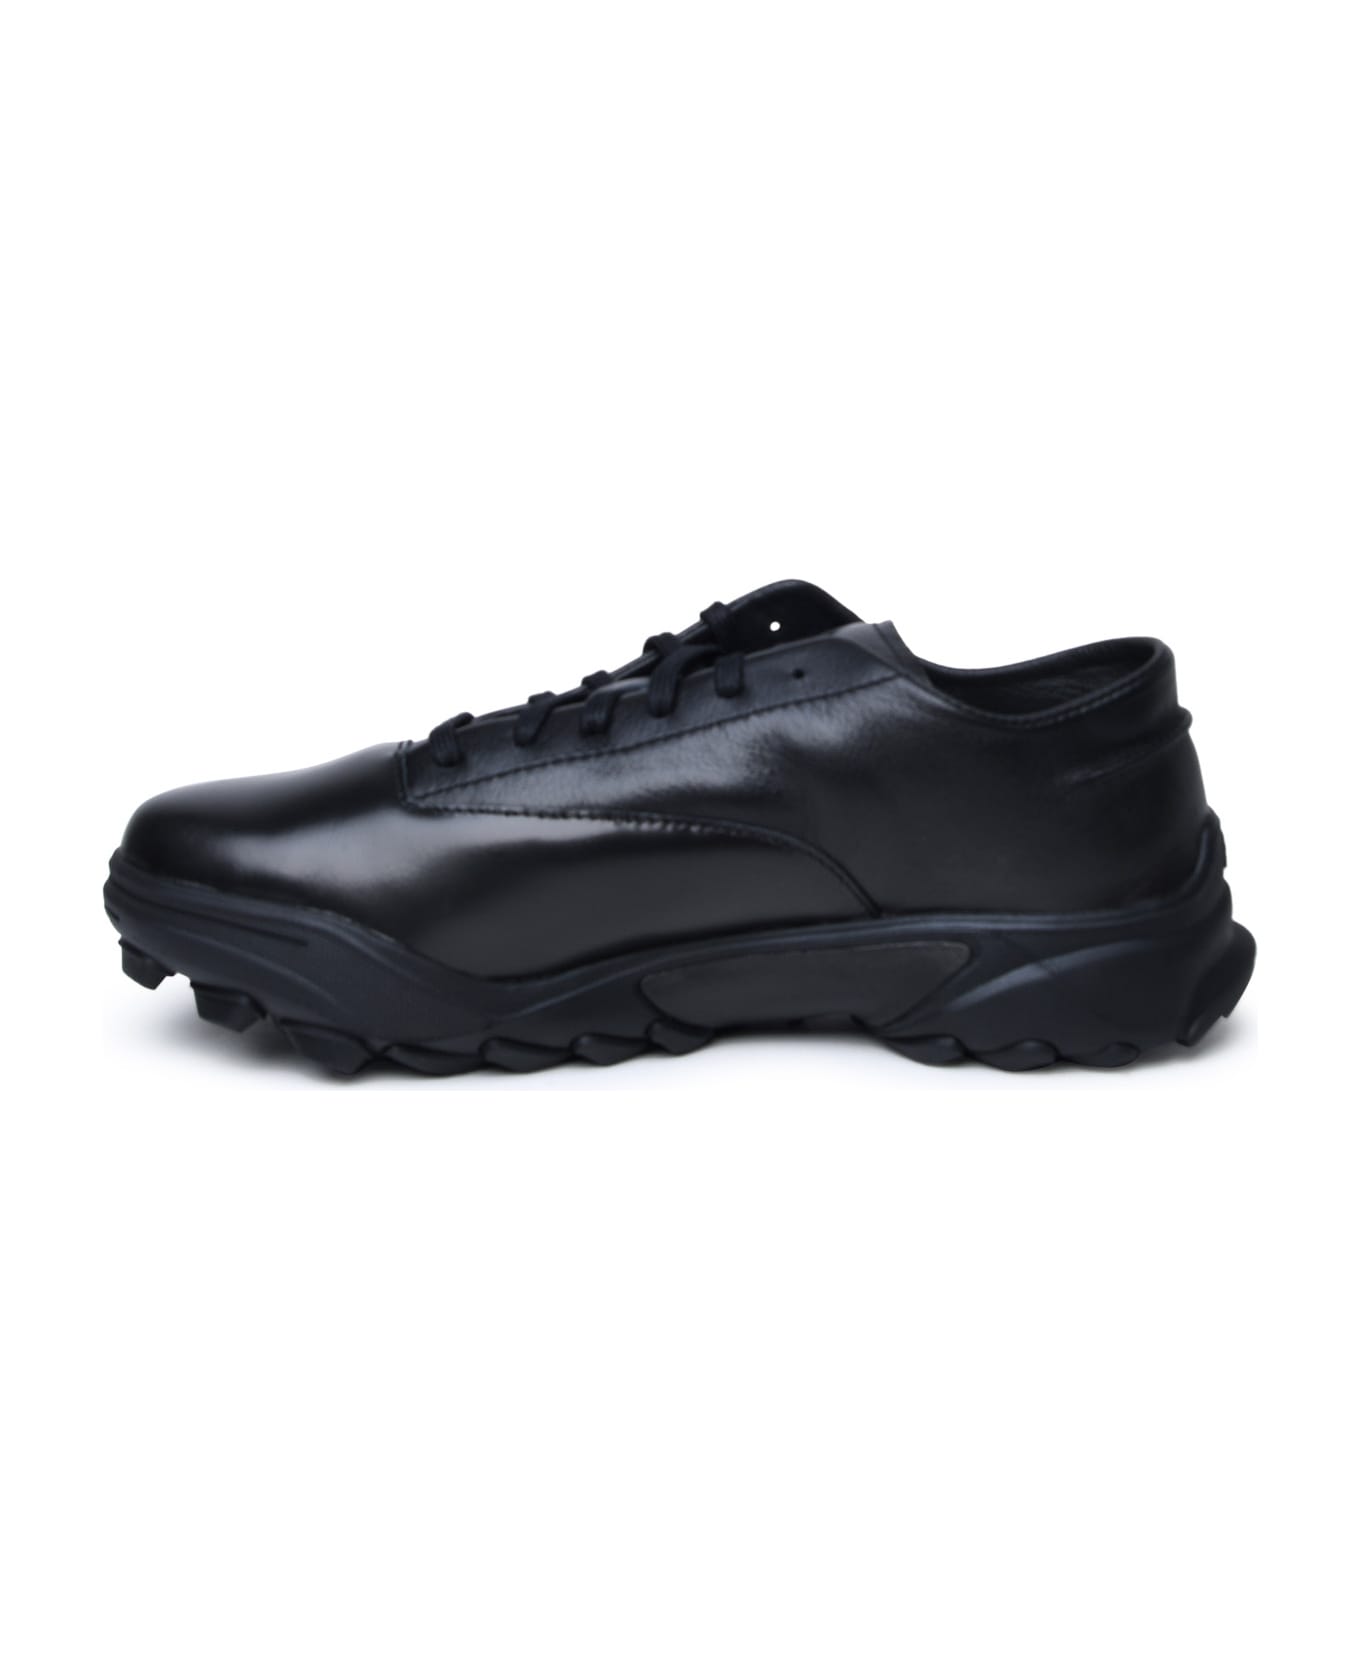 Y-3 Black Leather Sneakers - Black